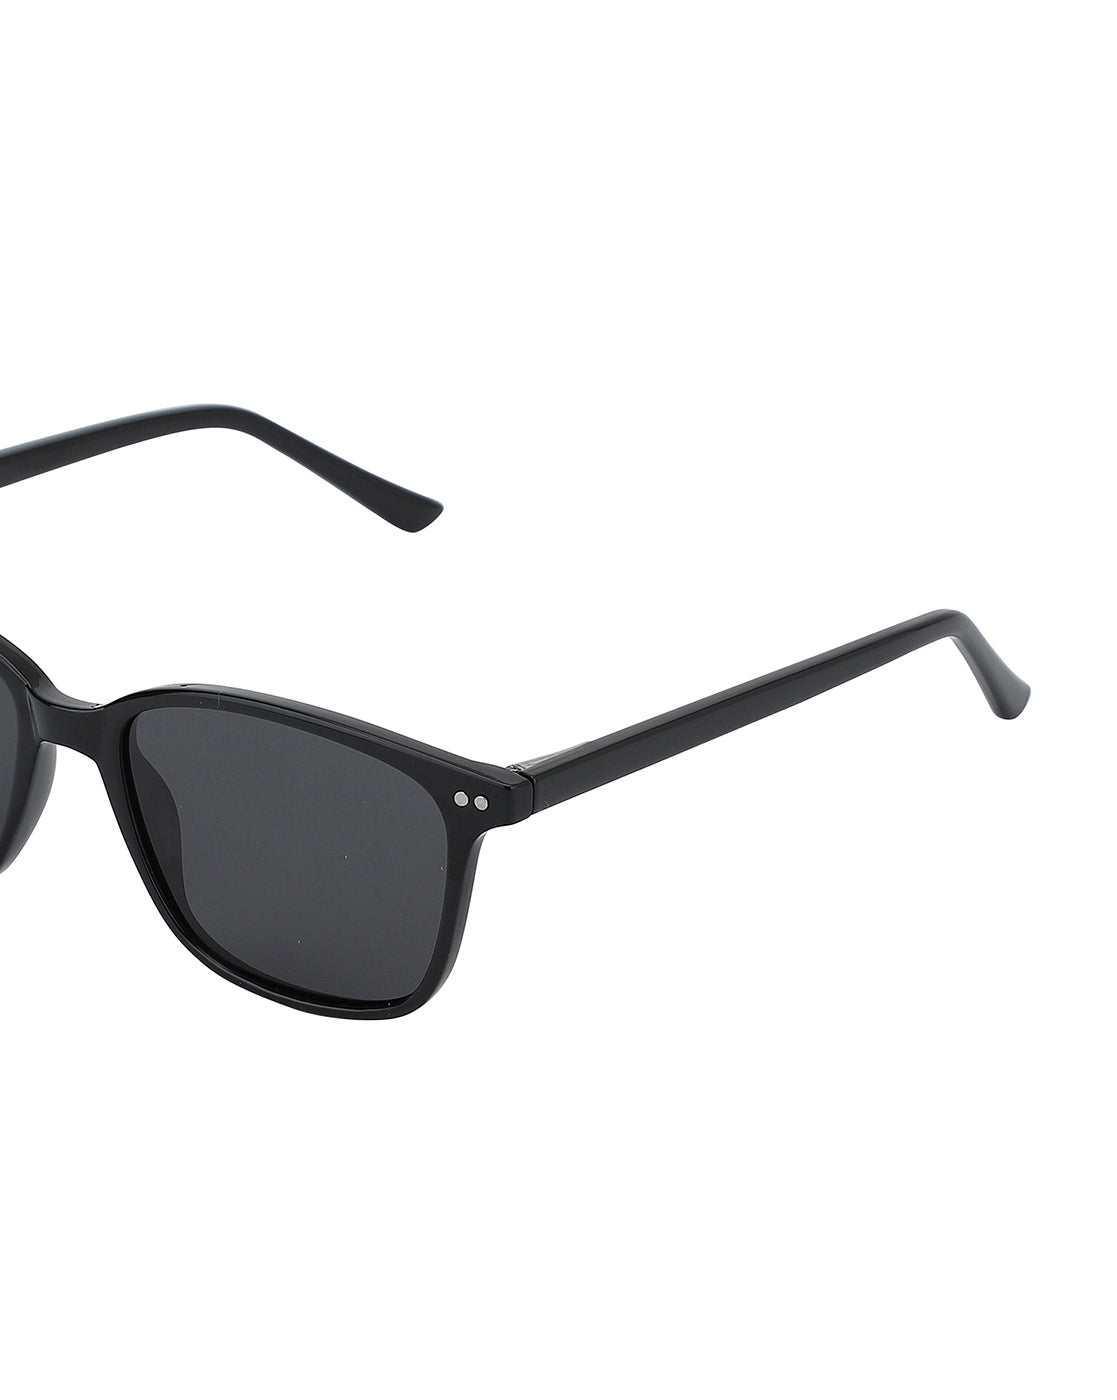 Carlton London Unisex Polarised Square Sunglasses